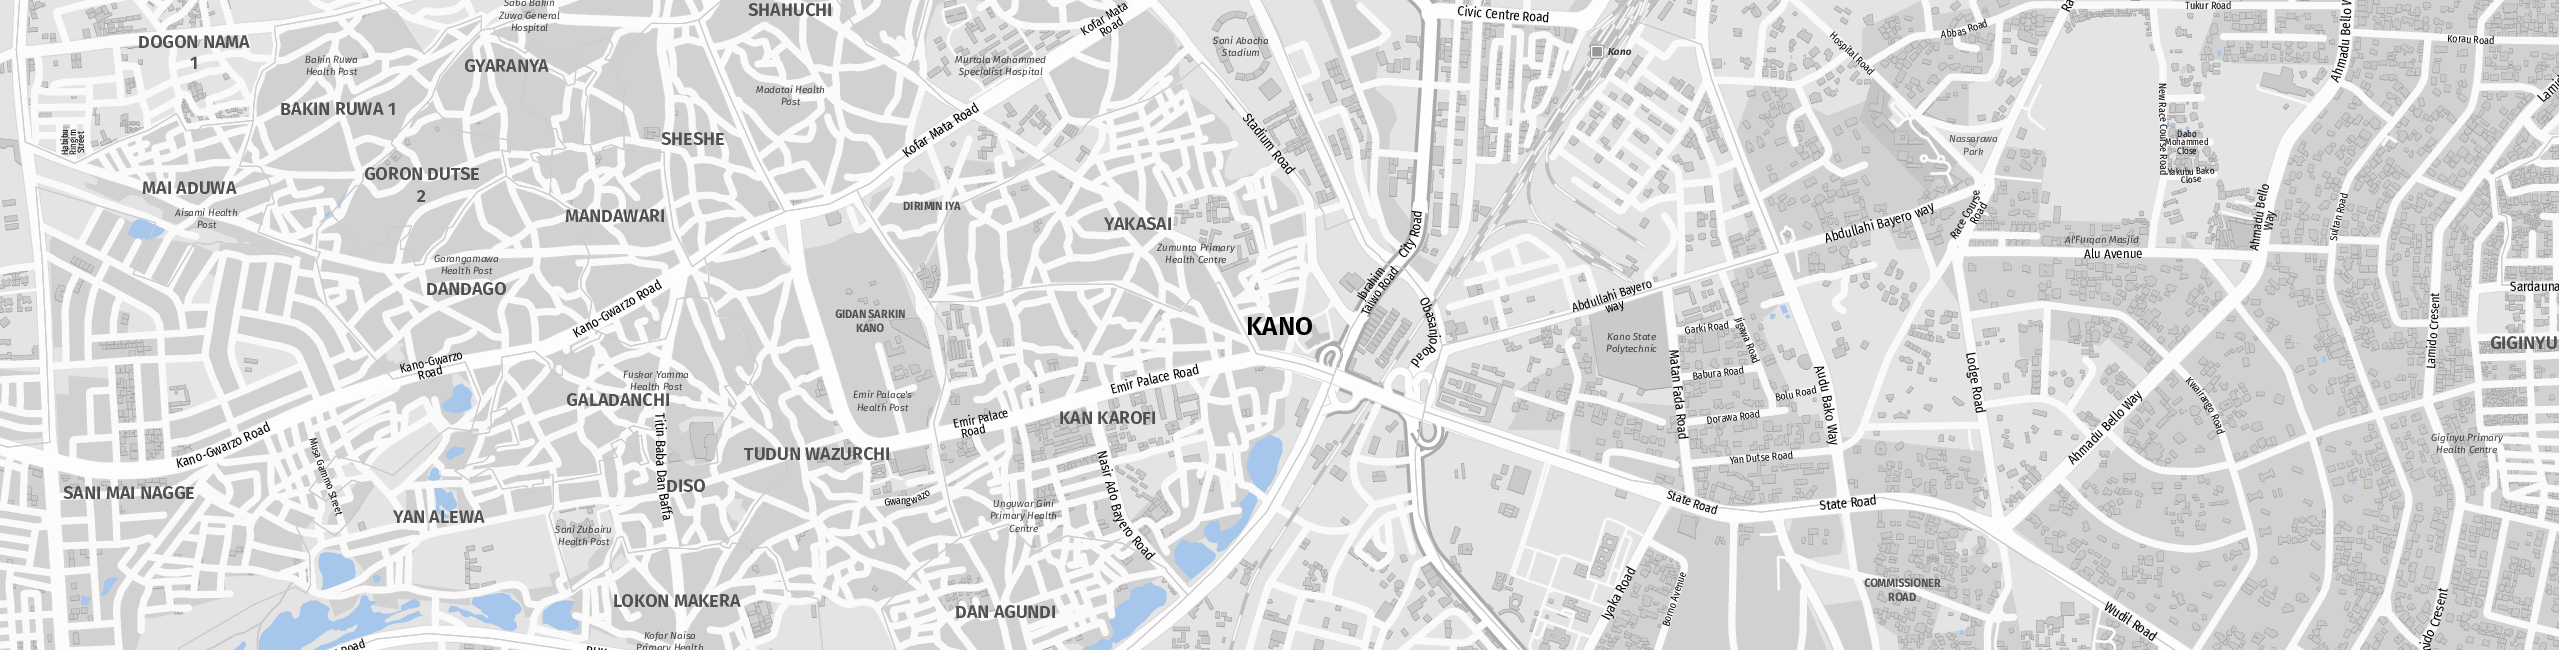 Stadtplan Kano zum Downloaden.